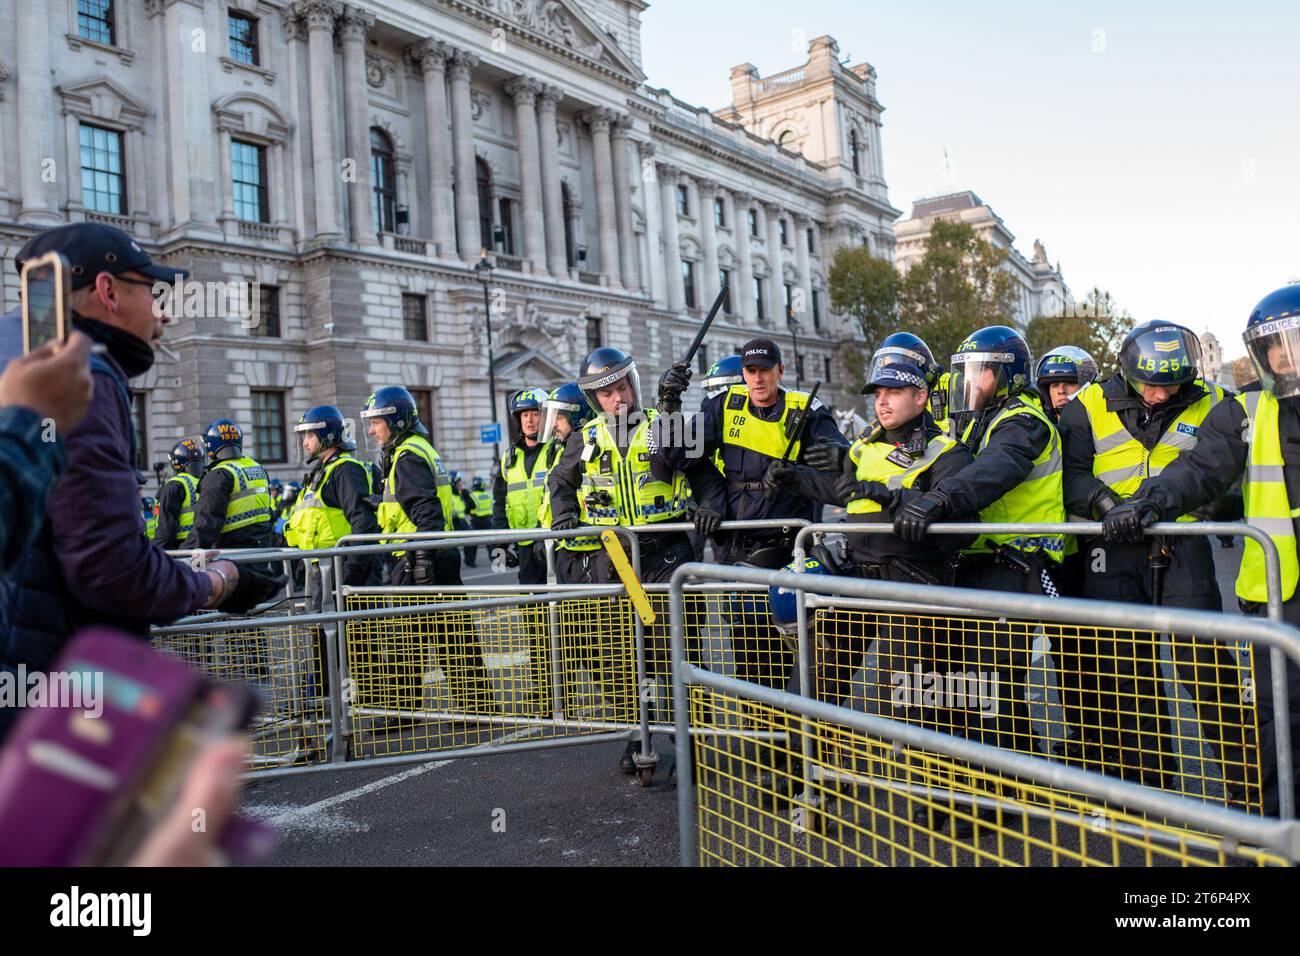 11. November 2023, London, Vereinigtes Königreich: Rechtsextreme Demonstranten stoßen mit der Polizei zusammen, um Cenotaph zu erreichen. Flaschen werden geworfen und Kämpfe brechen aus, als Offiziere versuchen, etwa 1.000 rechtsextreme Demonstranten zu verhindern, die das Denkmal erreichen. Scotland Yard hat am Wochenende fast 2000 Offiziere in Zentral-London bei einer großen Polizeioperation eingesetzt. Rechtsextreme Demonstranten stoßen mit der Polizei zusammen, um Cenotaph zu erreichen. Flaschen werden geworfen und Kämpfe brechen aus, als Offiziere versuchen, etwa 1.000 rechtsextreme Demonstranten zu verhindern, die das Denkmal erreichen. Scotland Yard hat fast 2000 Offiziere im gesamten cen eingesetzt Stockfoto